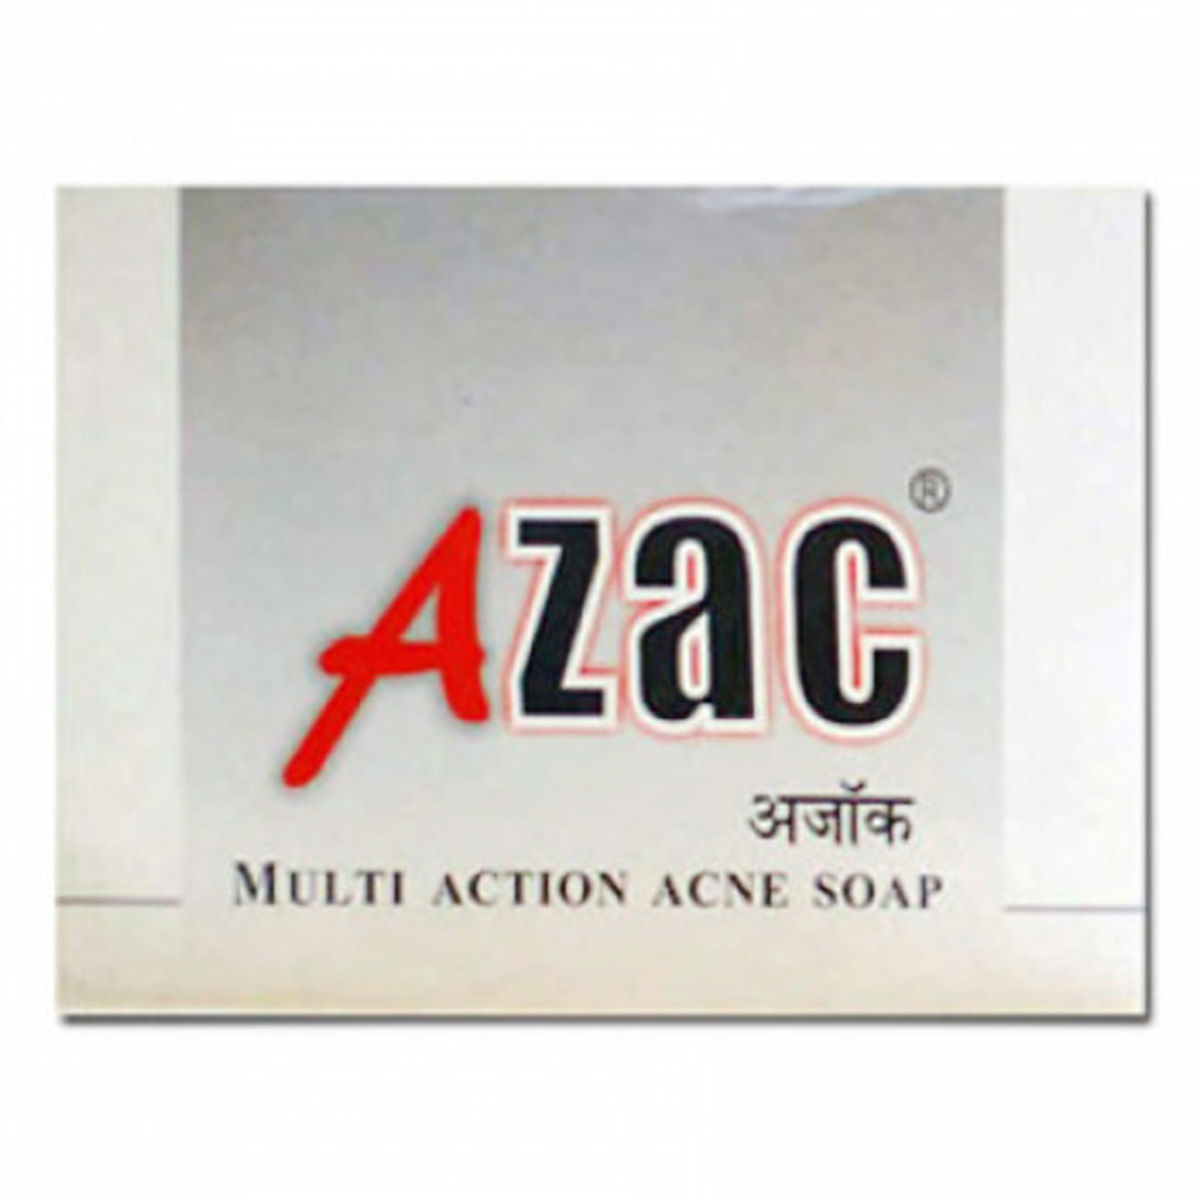 Buy Azac Soap, 75 gm Online